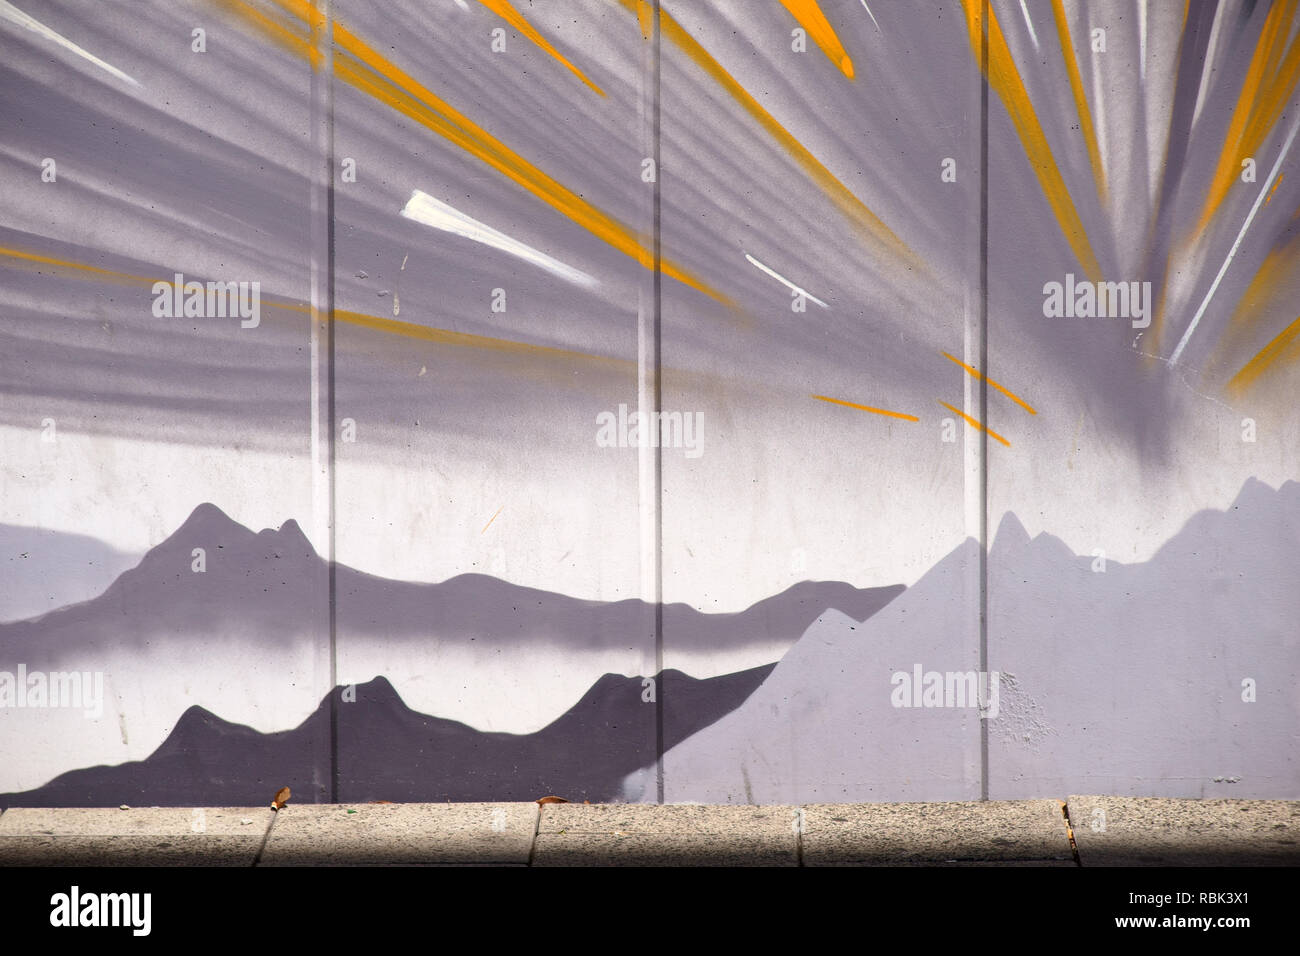 Francfort, Allemagne - le 11 août 2018 : Le dessin de montagnes et de soleil stylisé par un artiste inconnu à l'aéroport de Francfort le 11 août 2018 à F Banque D'Images